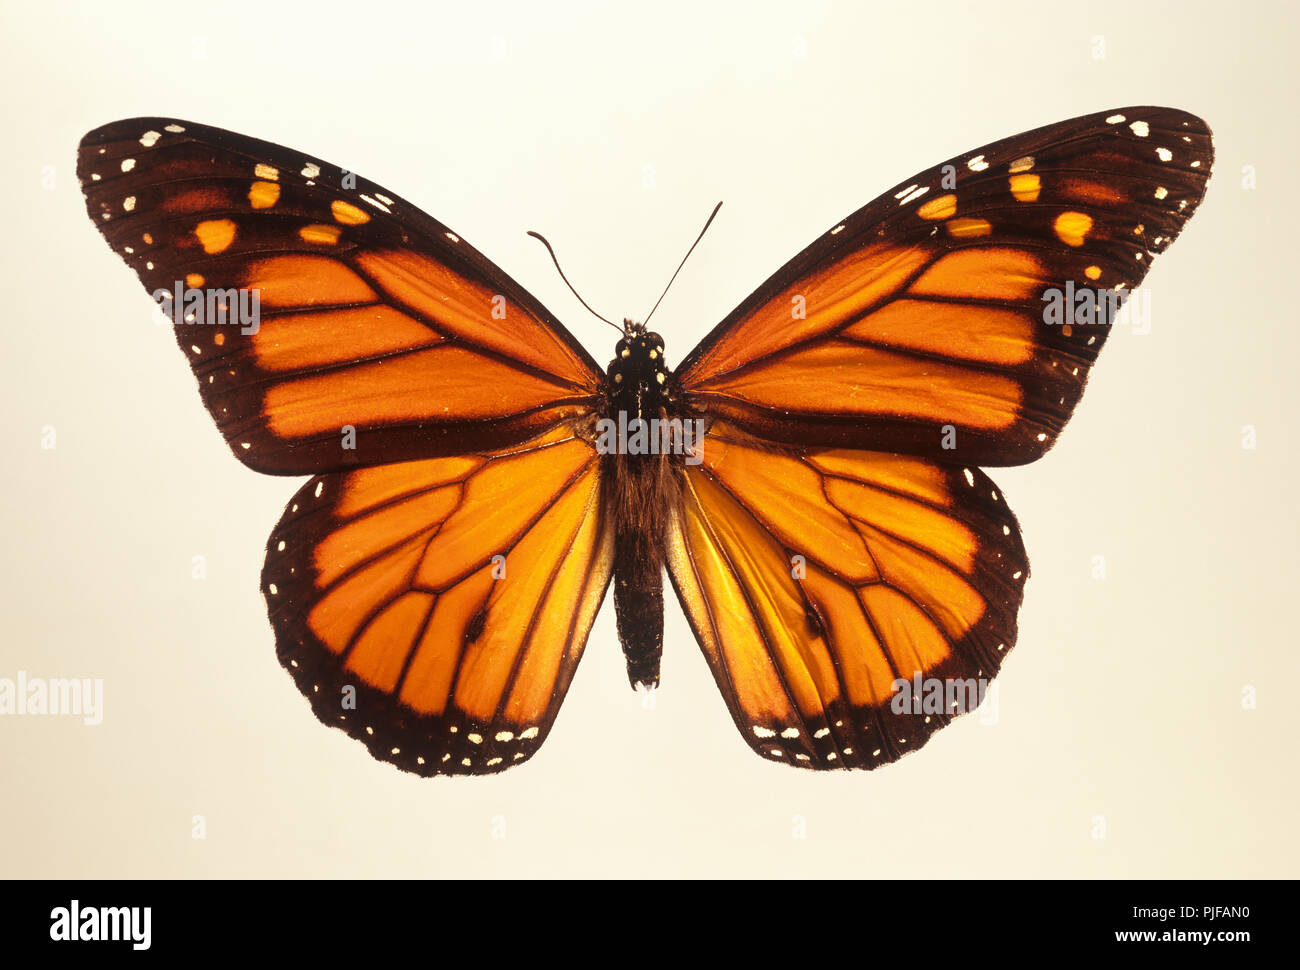 Papillon monarque montrant la pleine envergure, cela a été pris à partir d'un spécimen de taxidermie Banque D'Images